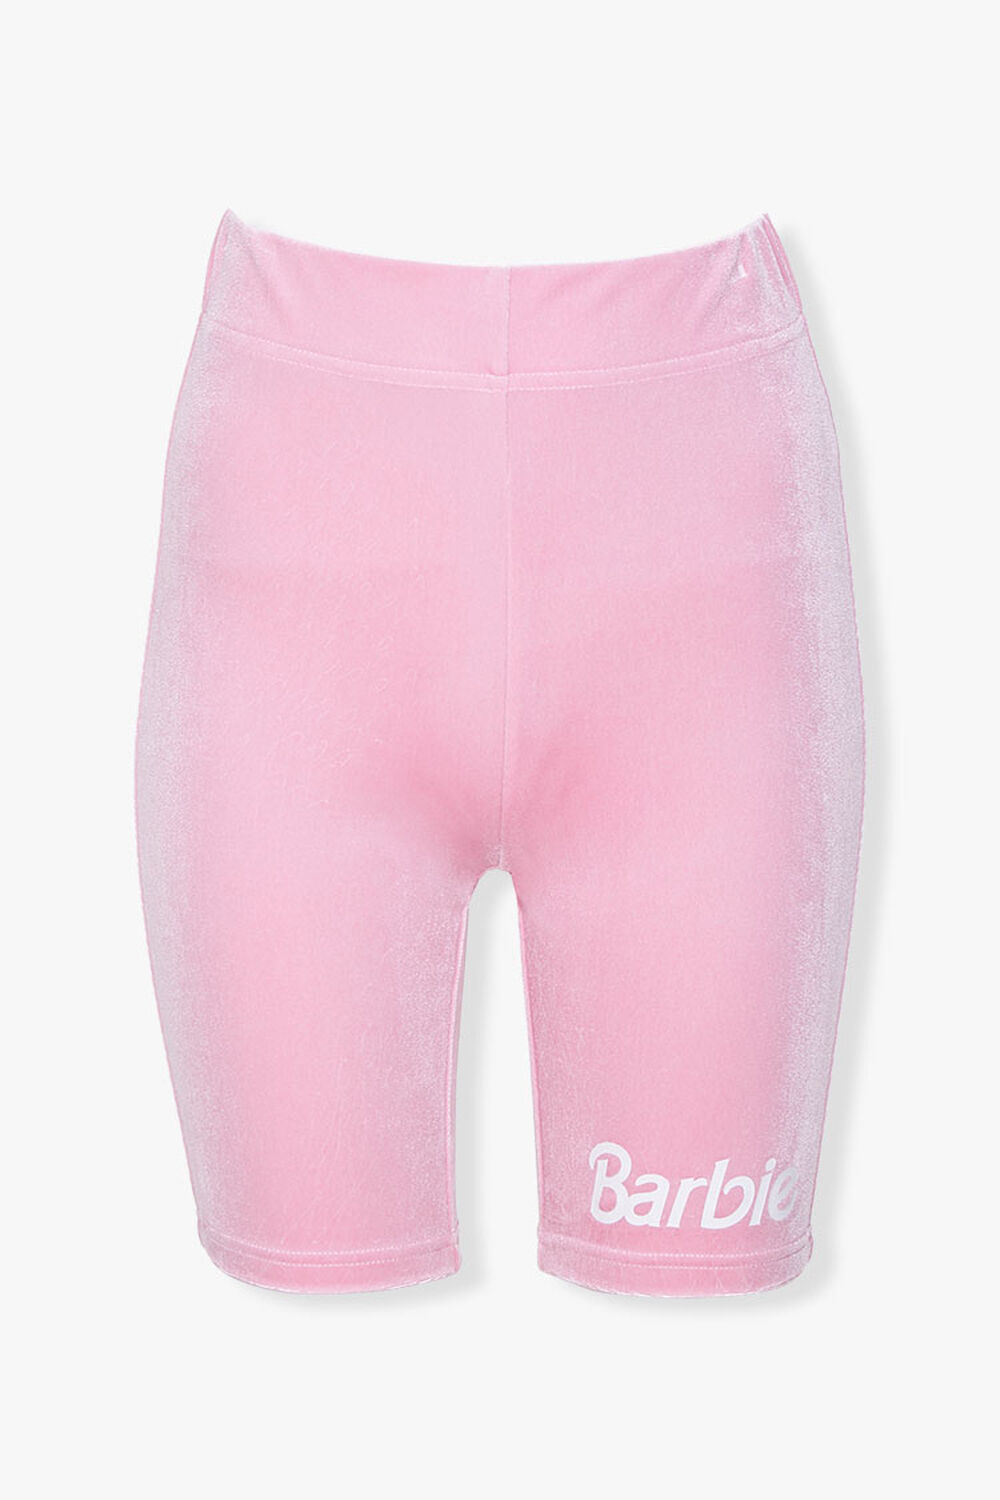 Barbie™ Biker Shorts, image 1